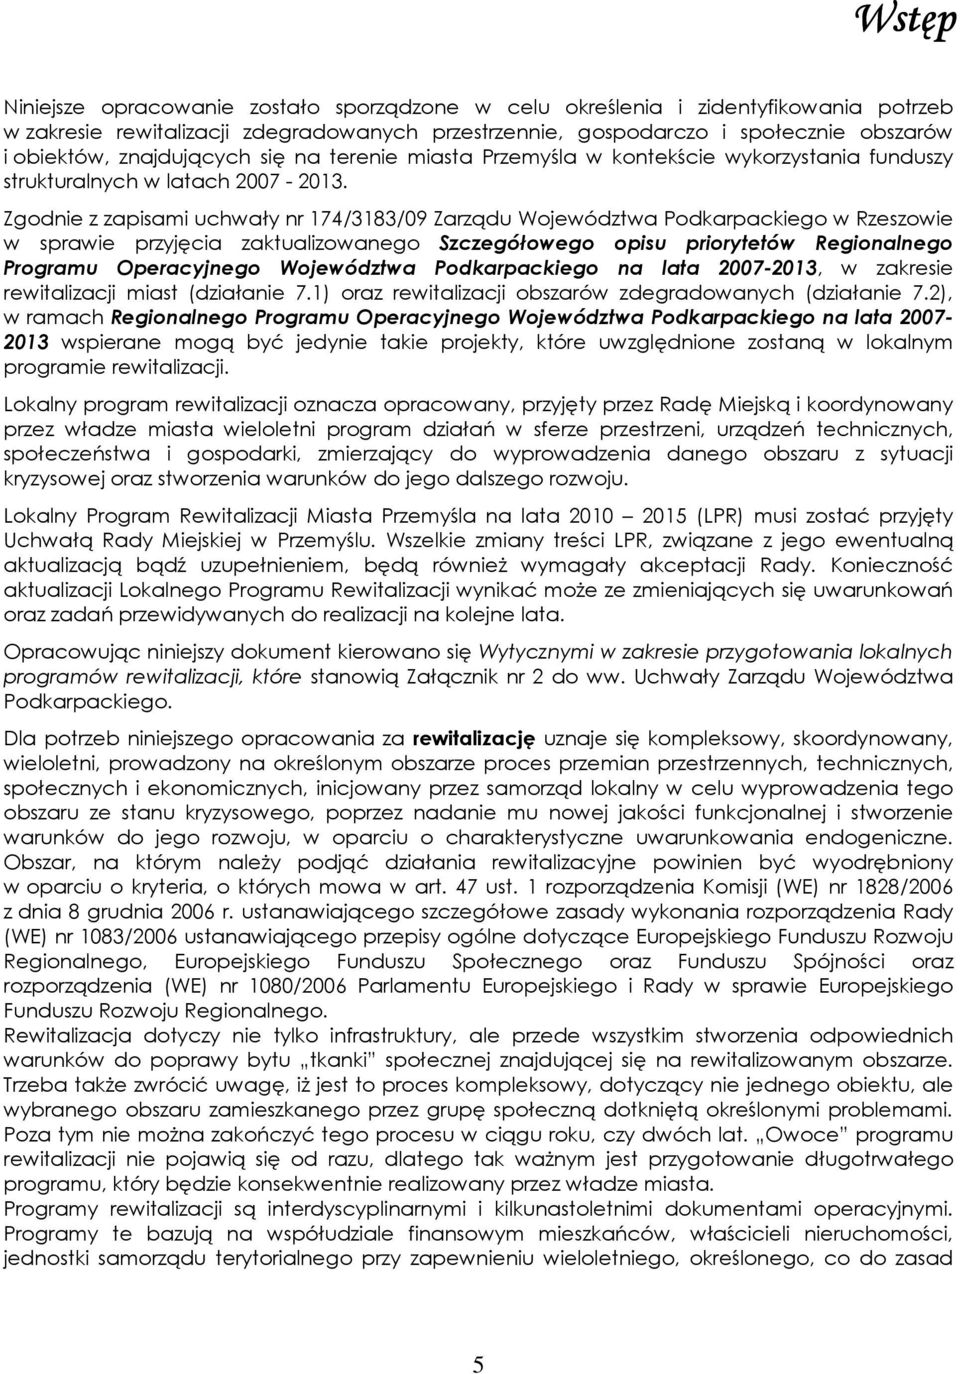 Zgodnie z zapisami uchwały nr 174/3183/09 Zarządu Województwa Podkarpackiego w Rzeszowie w sprawie przyjęcia zaktualizowanego Szczegółowego opisu priorytetów Regionalnego Programu Operacyjnego